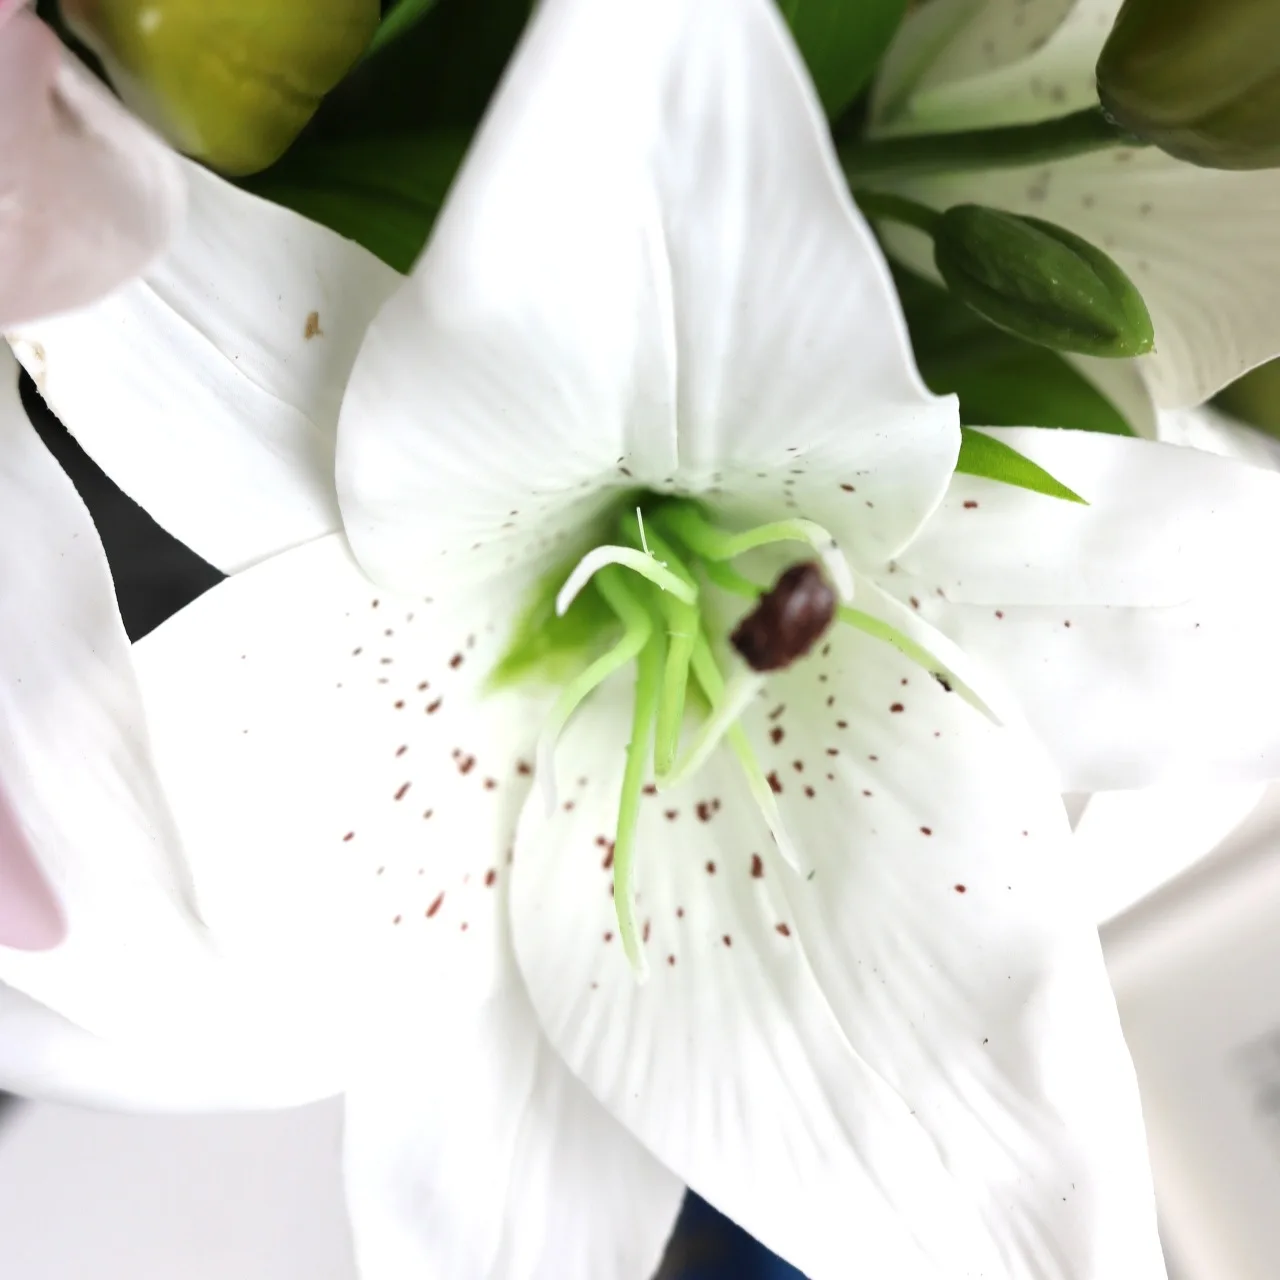 Искусственная лилия Флорес, 3 головки, настоящее прикосновение, сделай сам, свадебные, искусственные цветы, букет, растения, Белая лилия, домашние, вечерние, декор для демонстрации